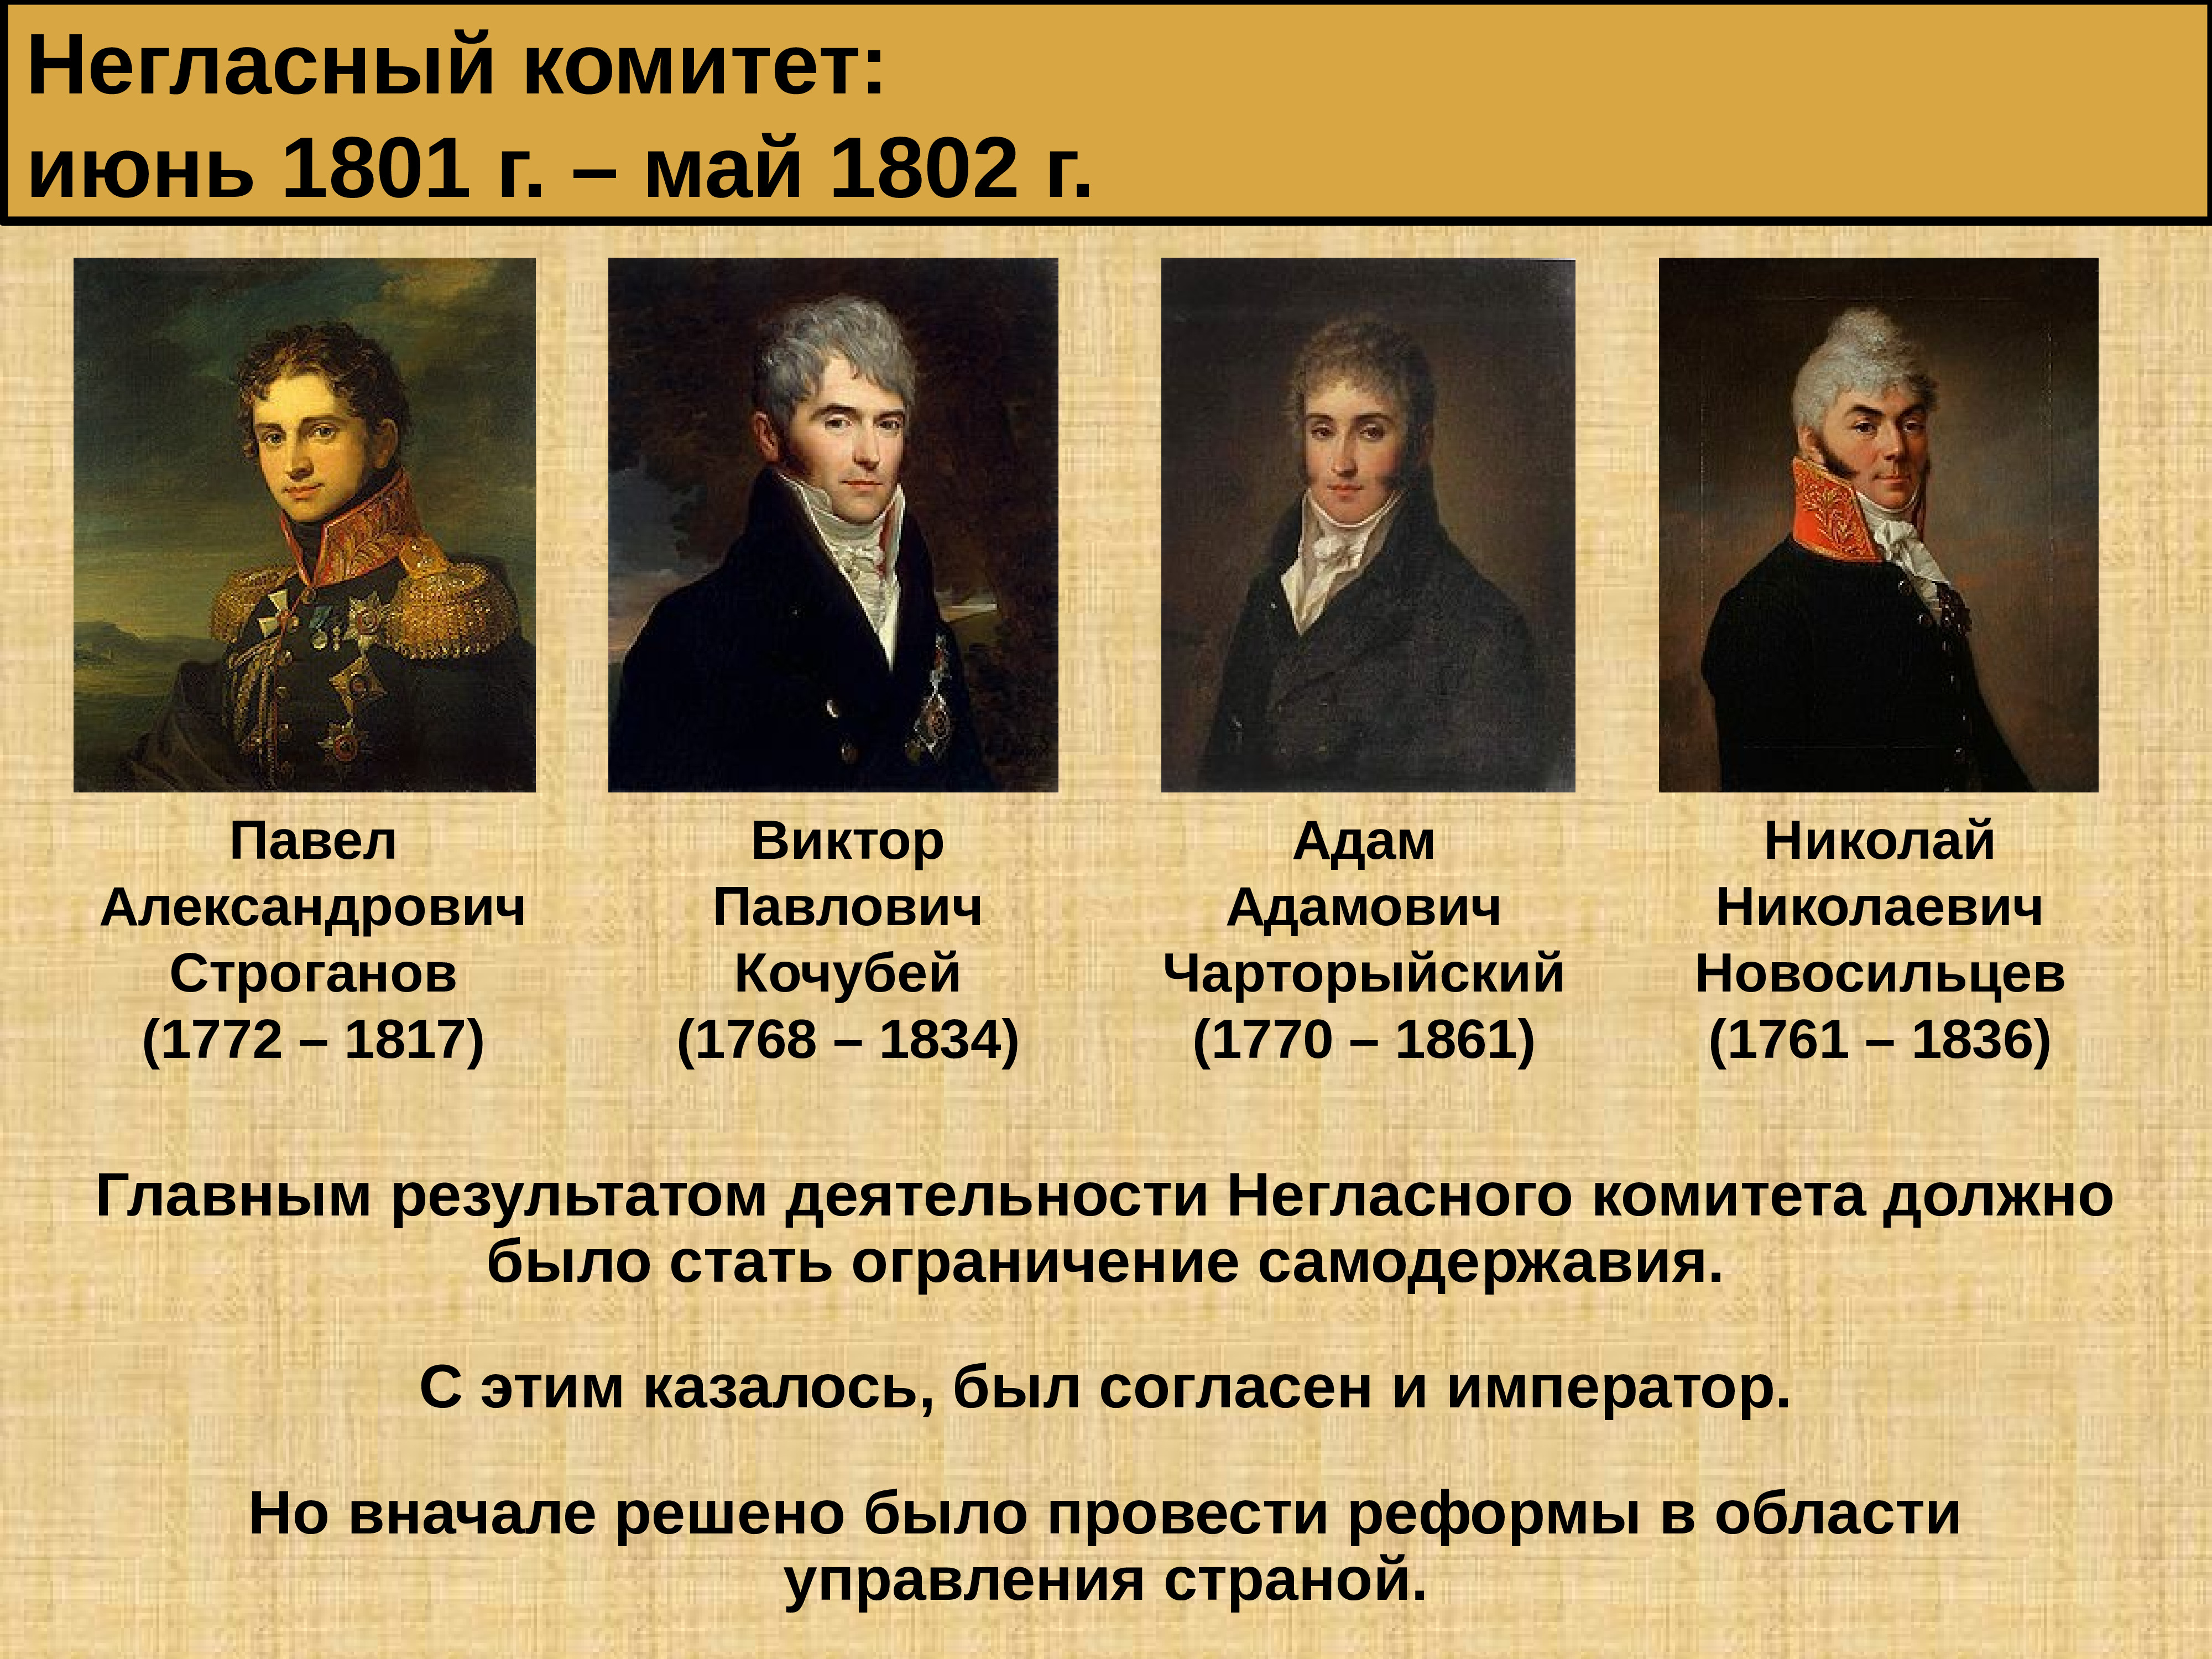 Работа негласного комитета. Негласный комитет 1801 - 1805.